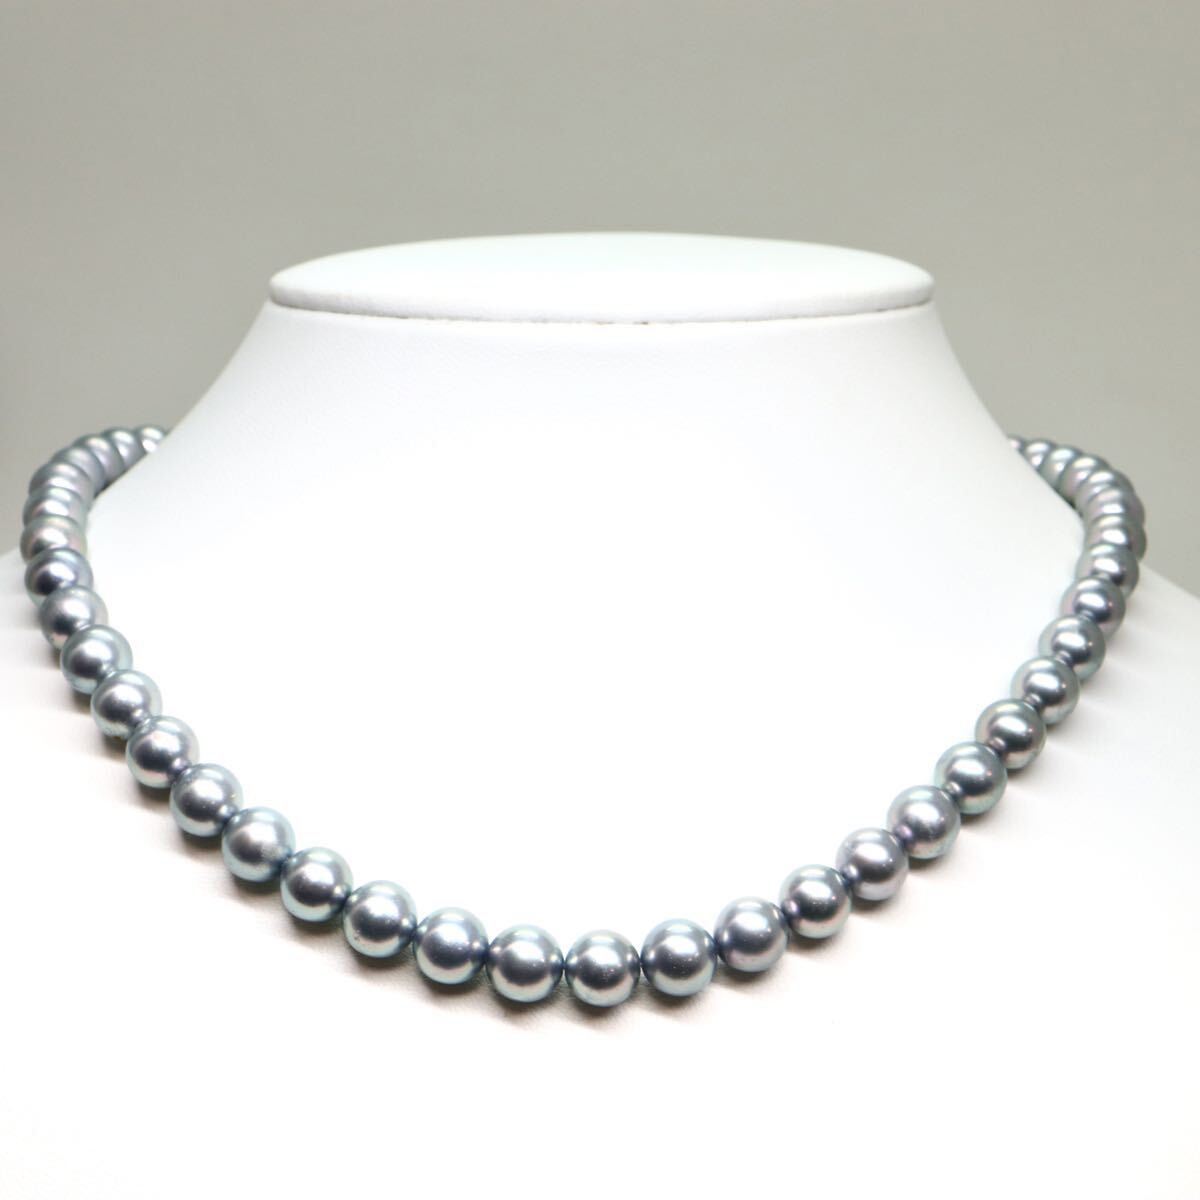 TASAKI(田崎真珠)《アコヤ本真珠ネックレス》M 36.4g 約42.5cm 約7.5-8.0mm珠 pearl パール necklace ジュエリー jewelry EA5/ED0_画像2